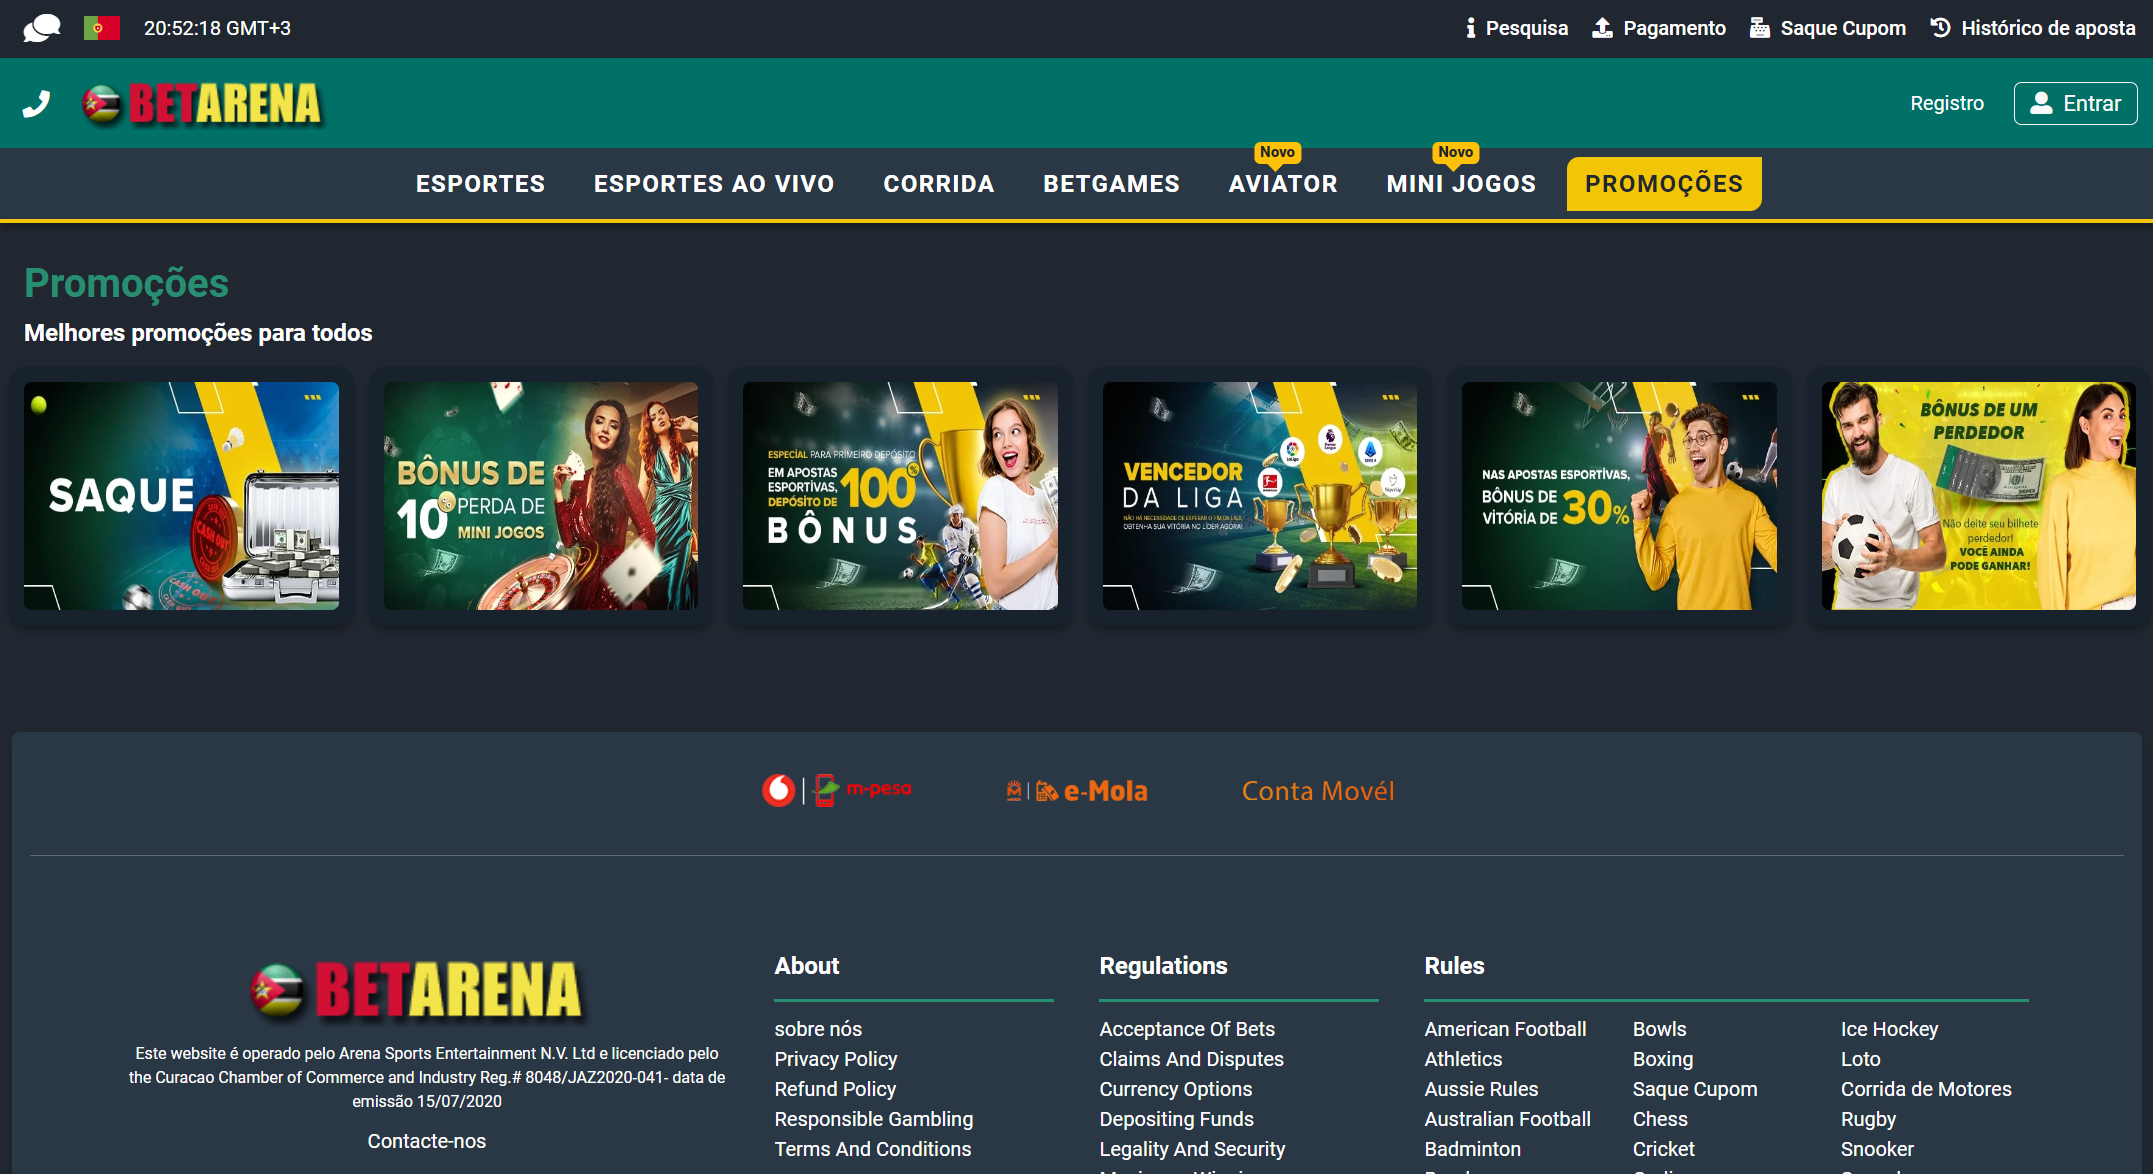 Secção promocional na versão web da BetArena